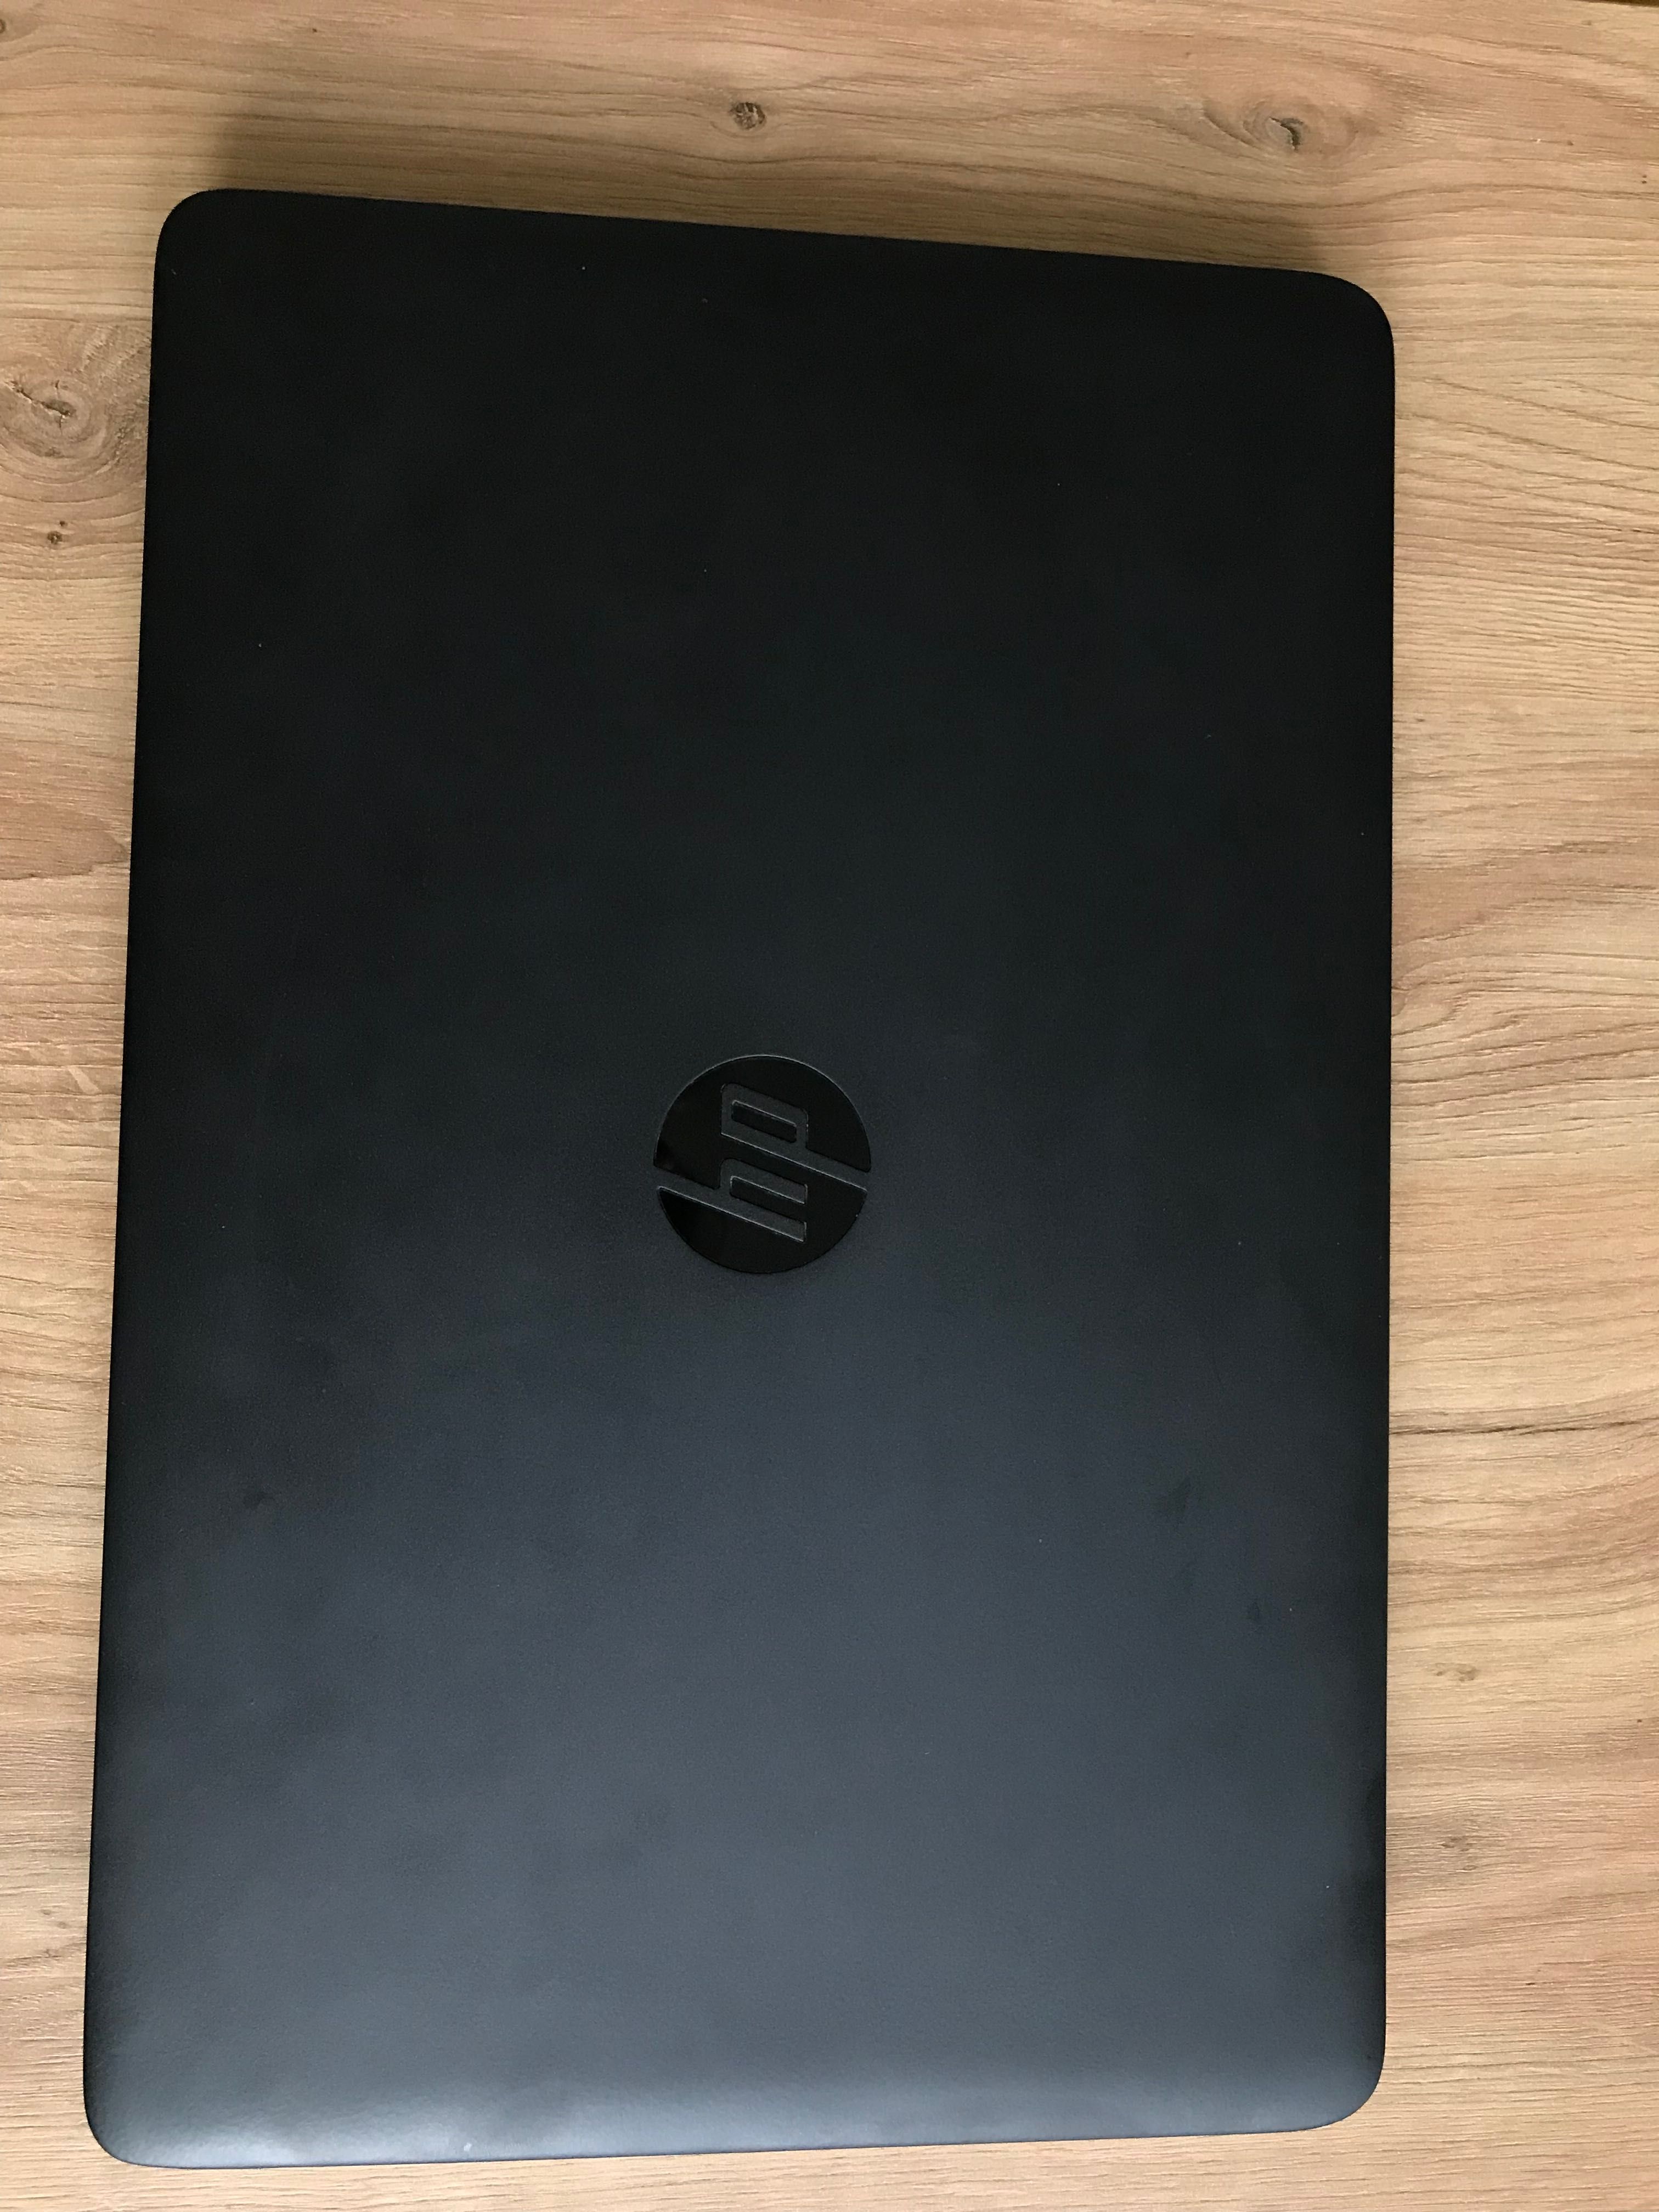 Laptop HP EliteBook 850 G2 i5-5200U 8GB 240GB SSD 1920x1080